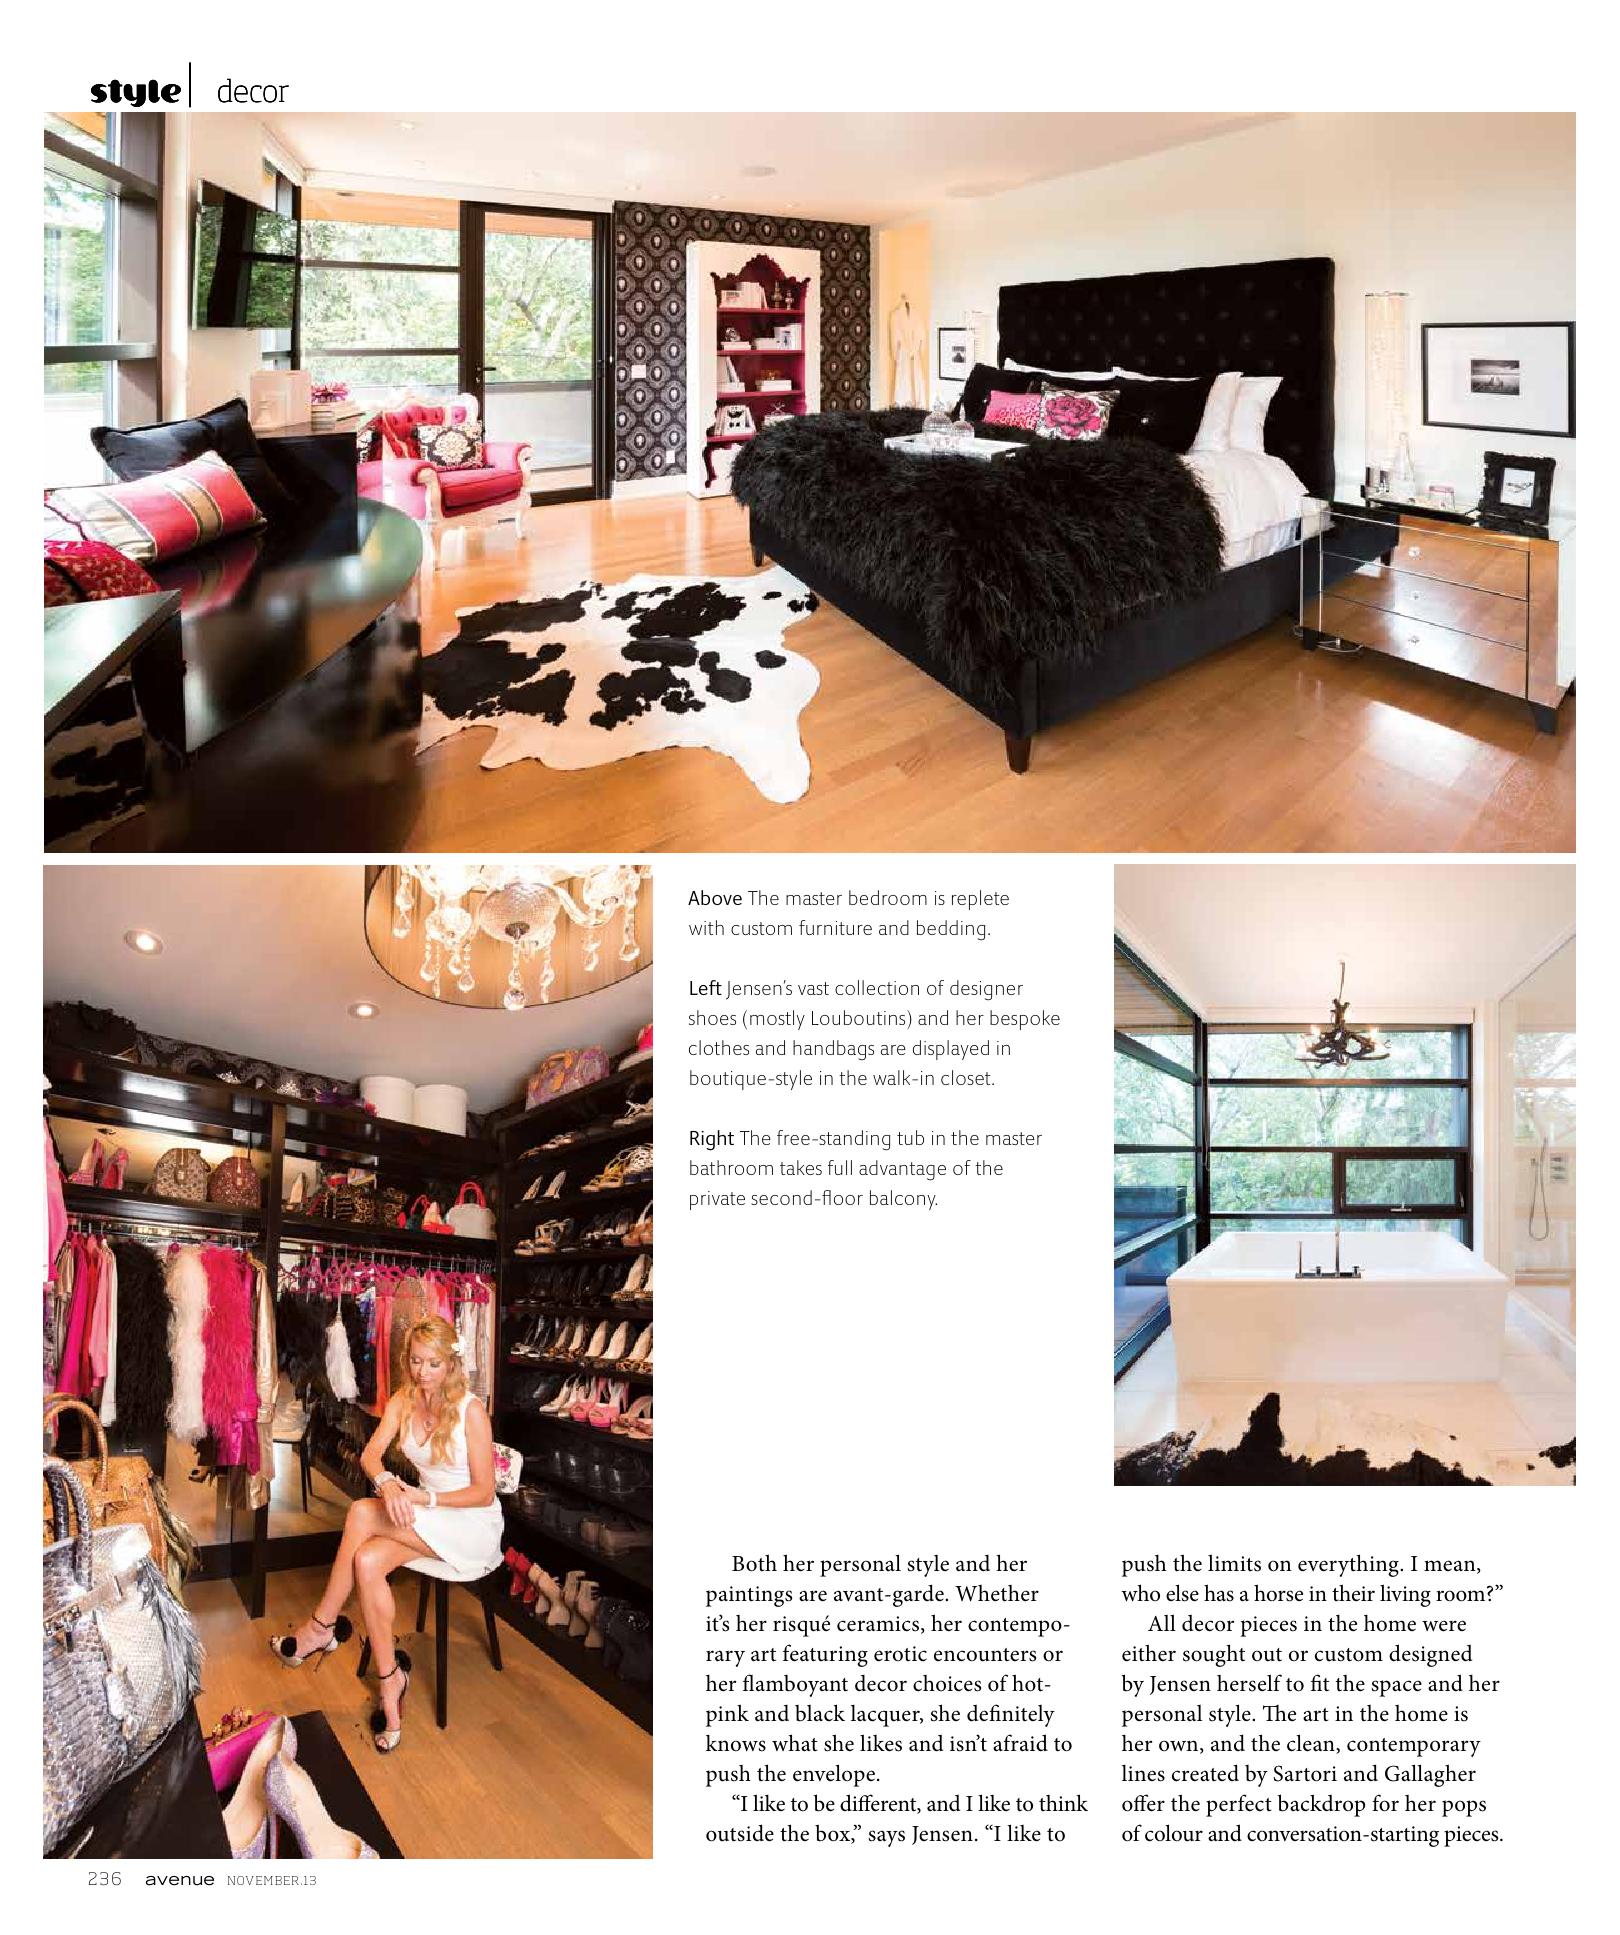 International Artist Monika Jensen's home featured in Avenue Magazine